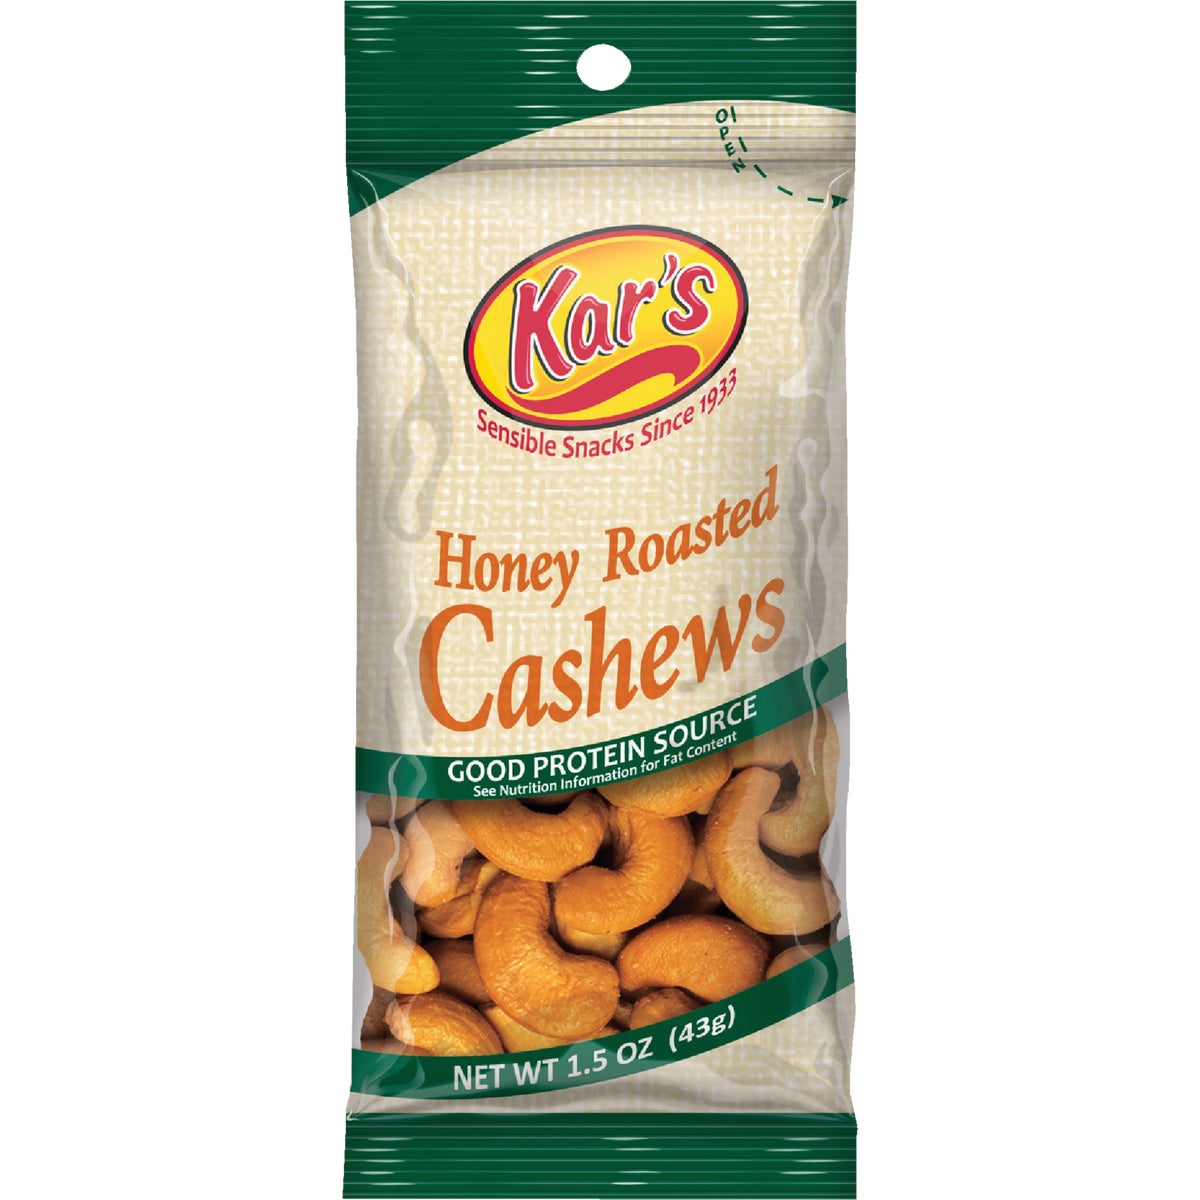 Item 970039, 1.5-ounce honey roasted cashews.